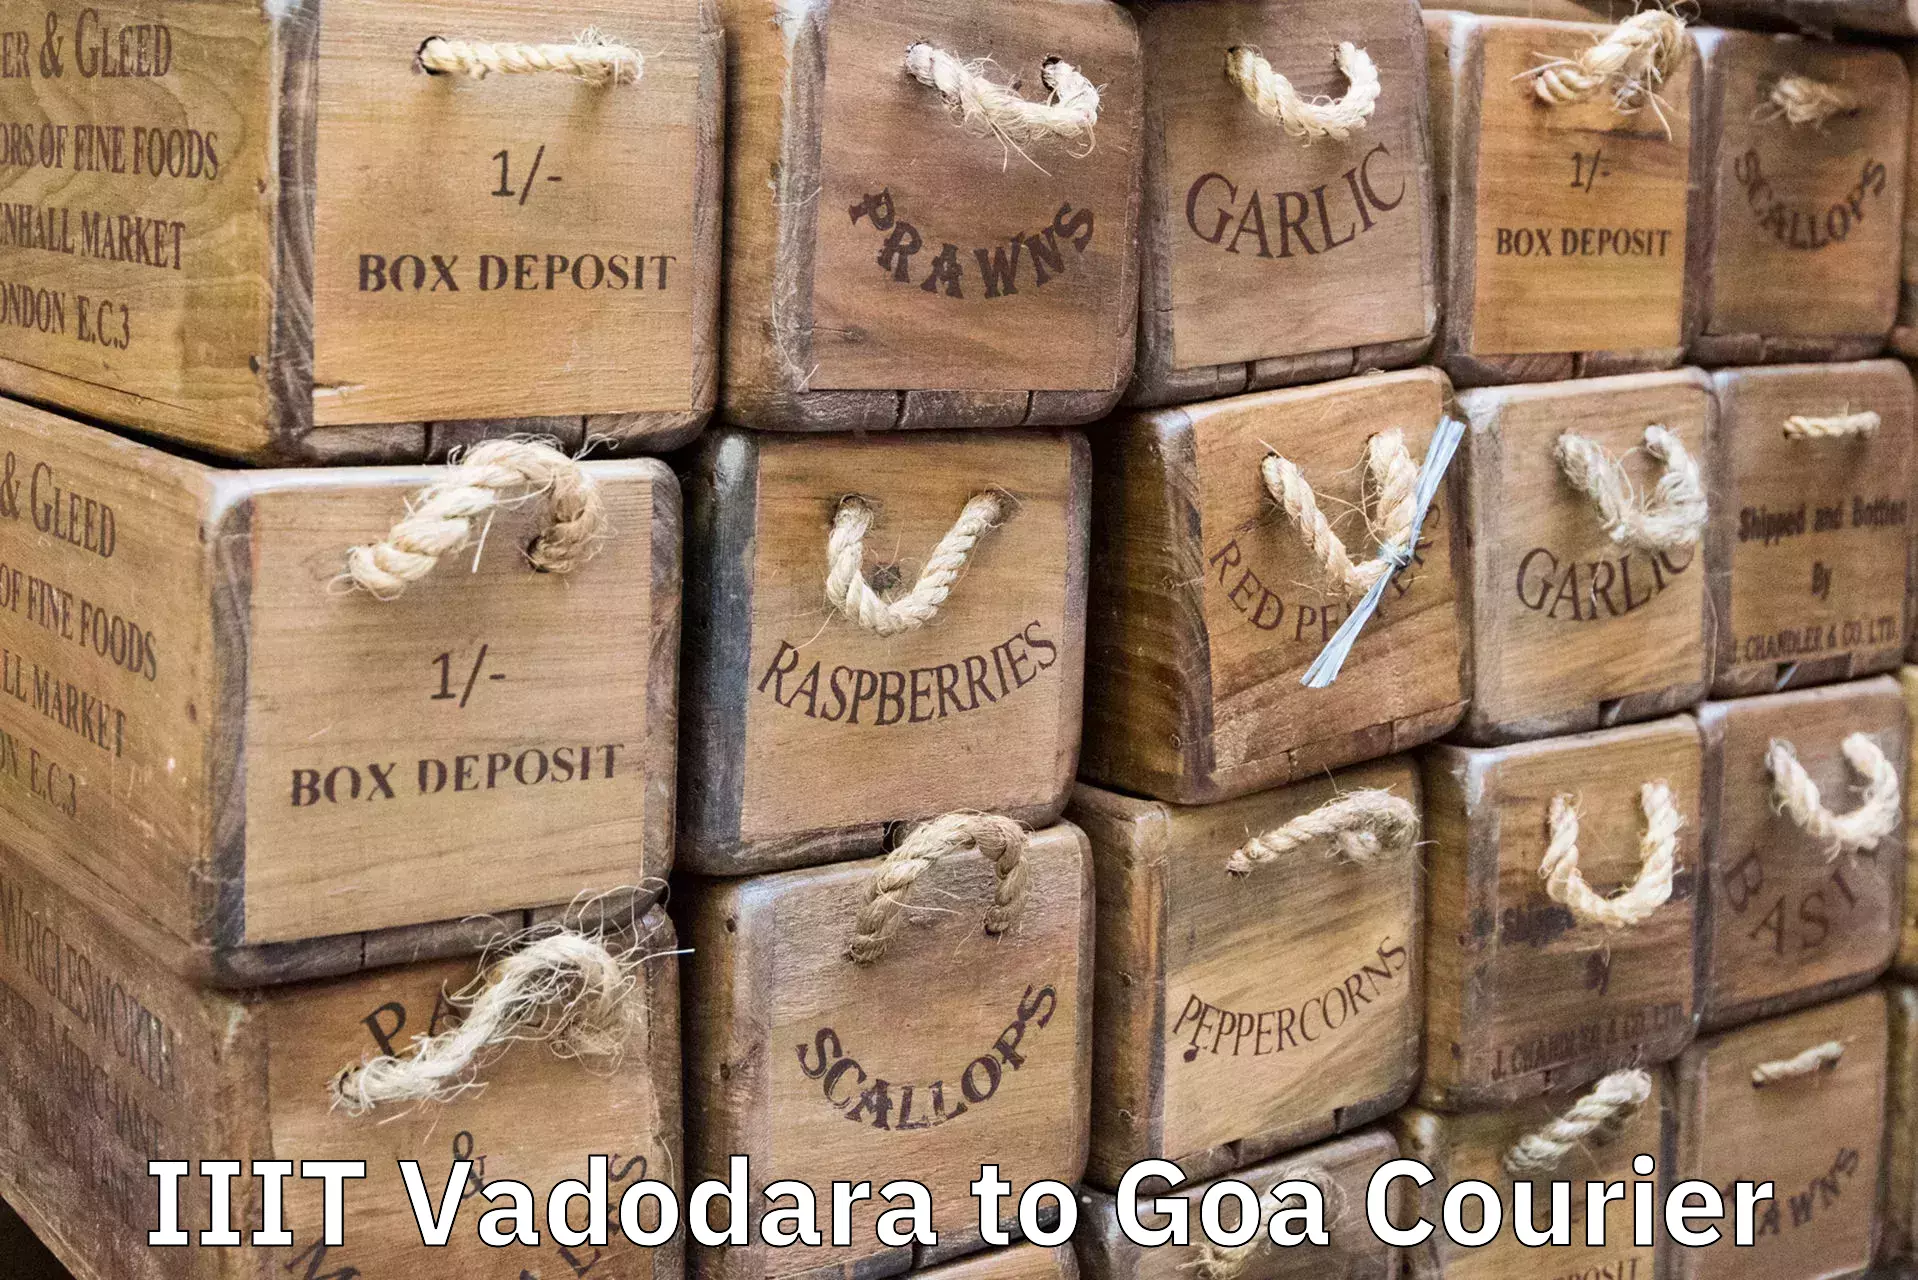 Door-to-door baggage service IIIT Vadodara to IIT Goa